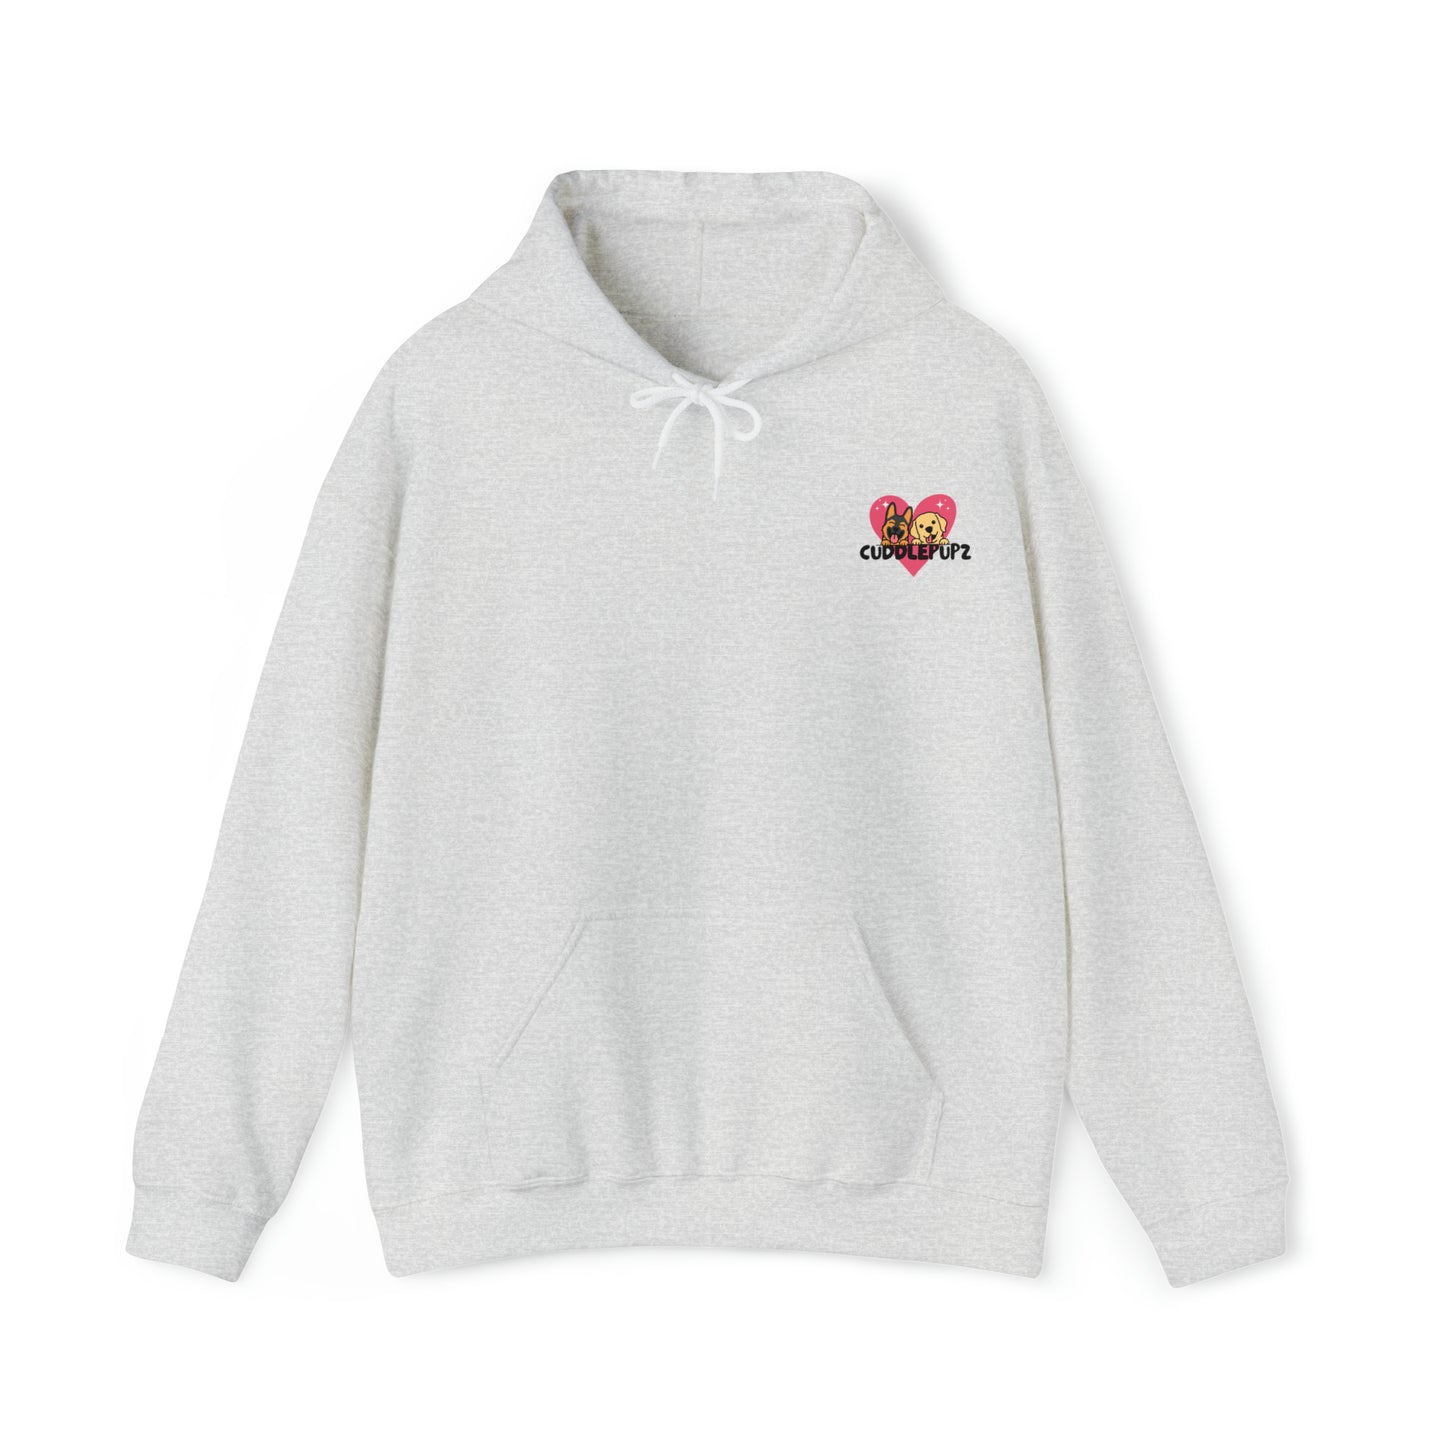 CuddlePupz Customisable Unisex Sweatshirt 🐾